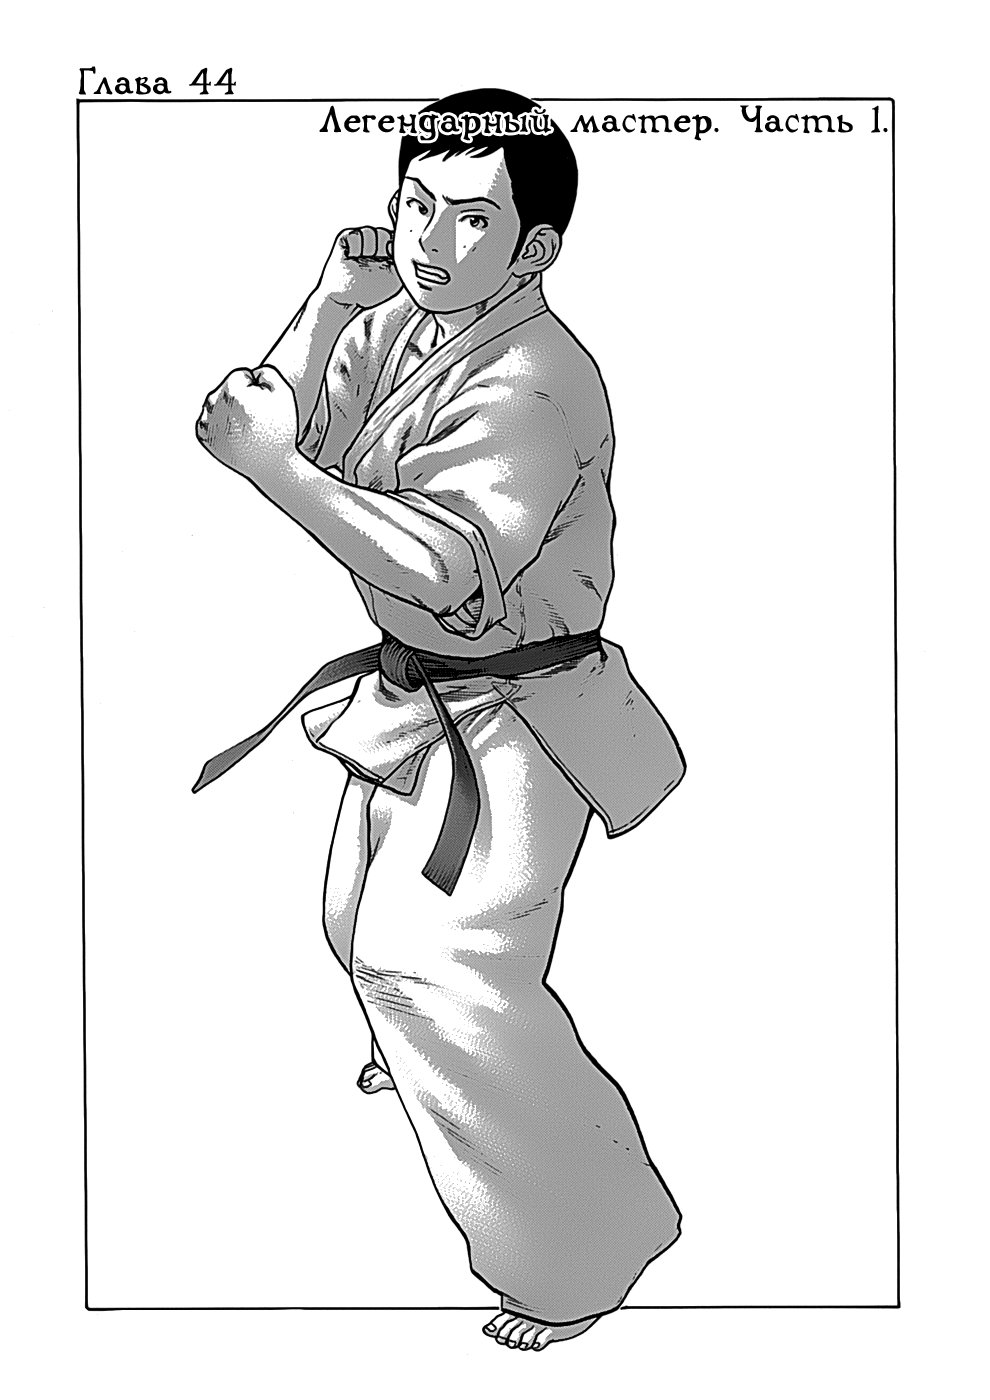 Принц карате - Кохината Минору 5 - 44 Легендарный мастер (часть 1)